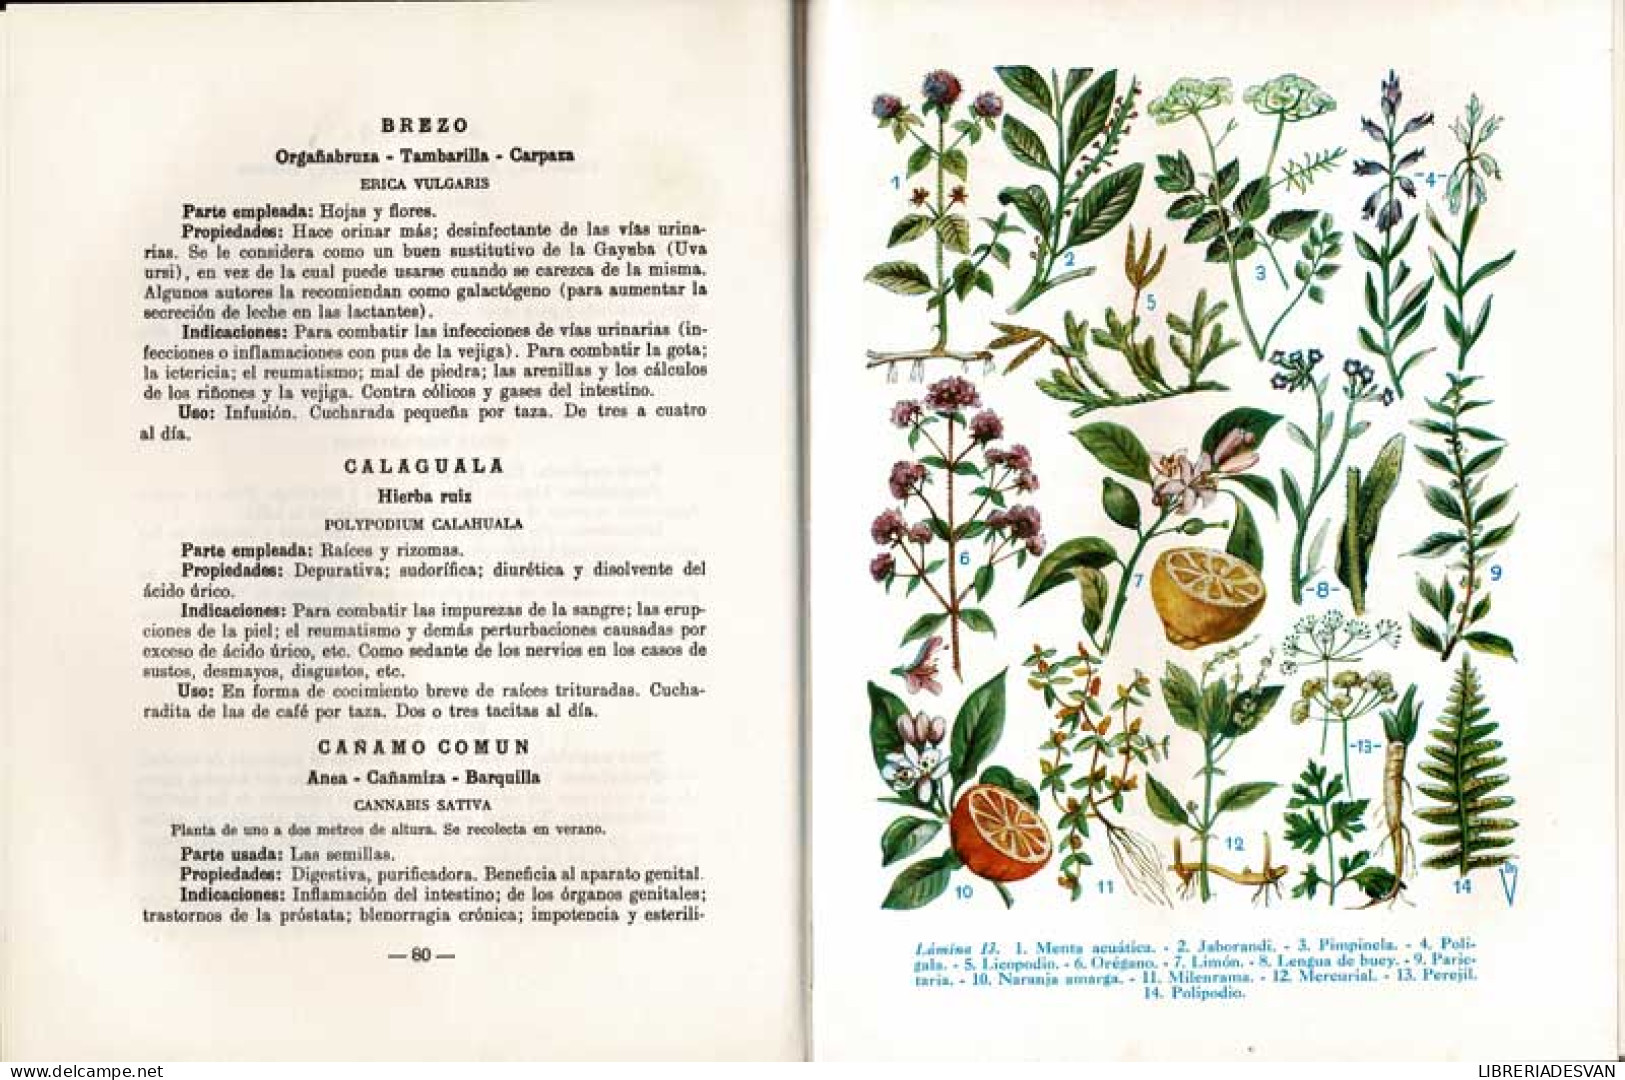 Plantas Medicinales. Las Enfermedades Y Su Tratamiento Por Las Plantas - Andrián Vander - Health & Beauty